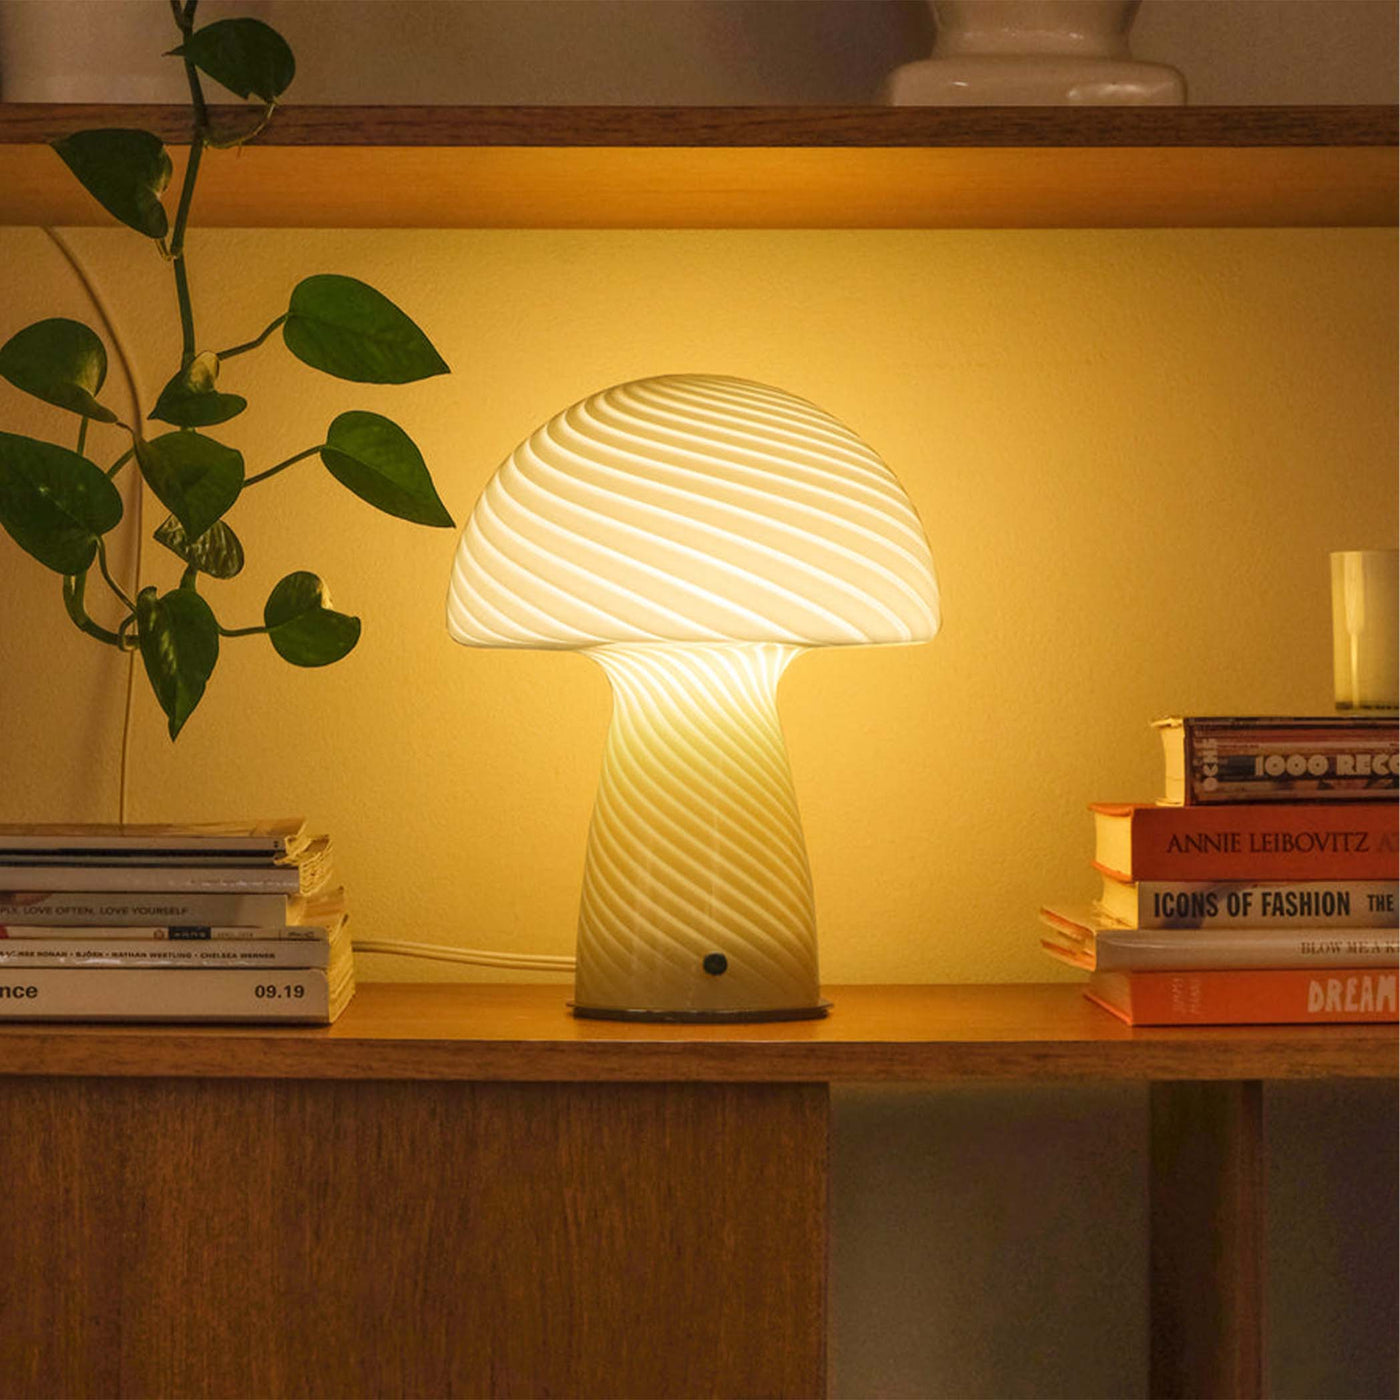 Créez une atmosphère apaisante et sophistiquée avec les lampes Champignon de Humber, des luminaires en verre artisanal, ajoutant une touche d'originalité à tout décor intérieur.